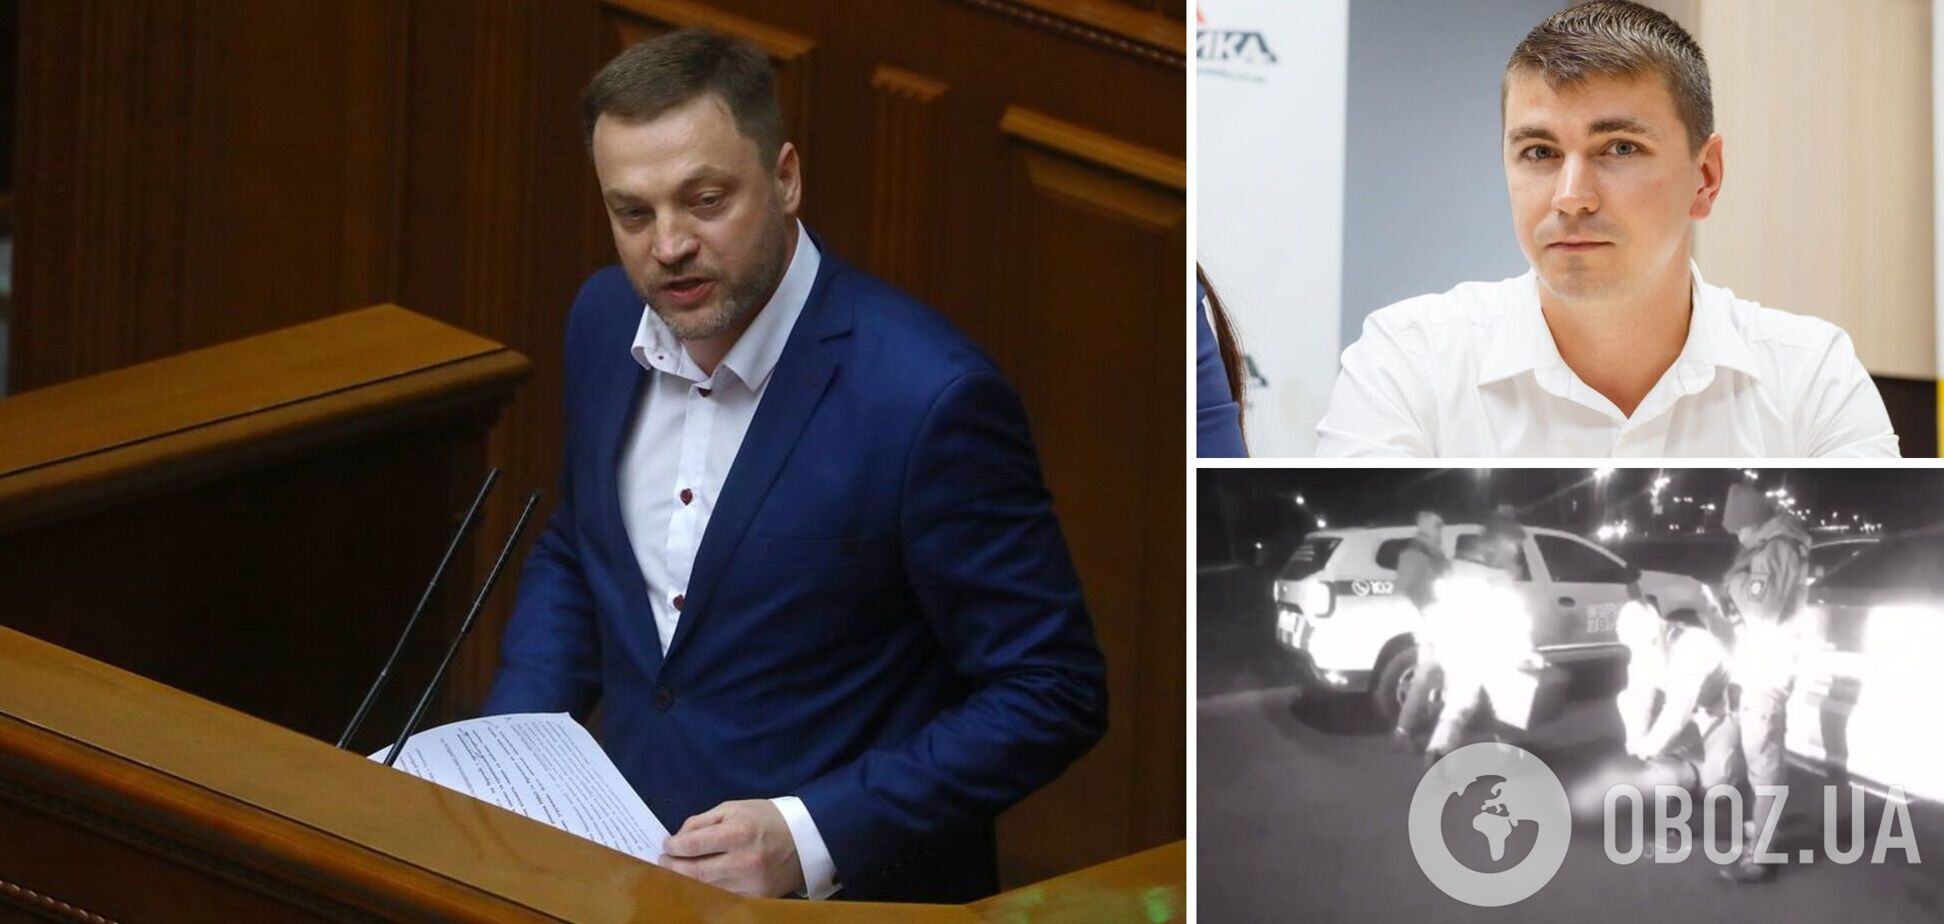 Следствие получило доступ к телефону нардепа Полякова: глава МВД анонсировал прорыв в расследовании. Видео